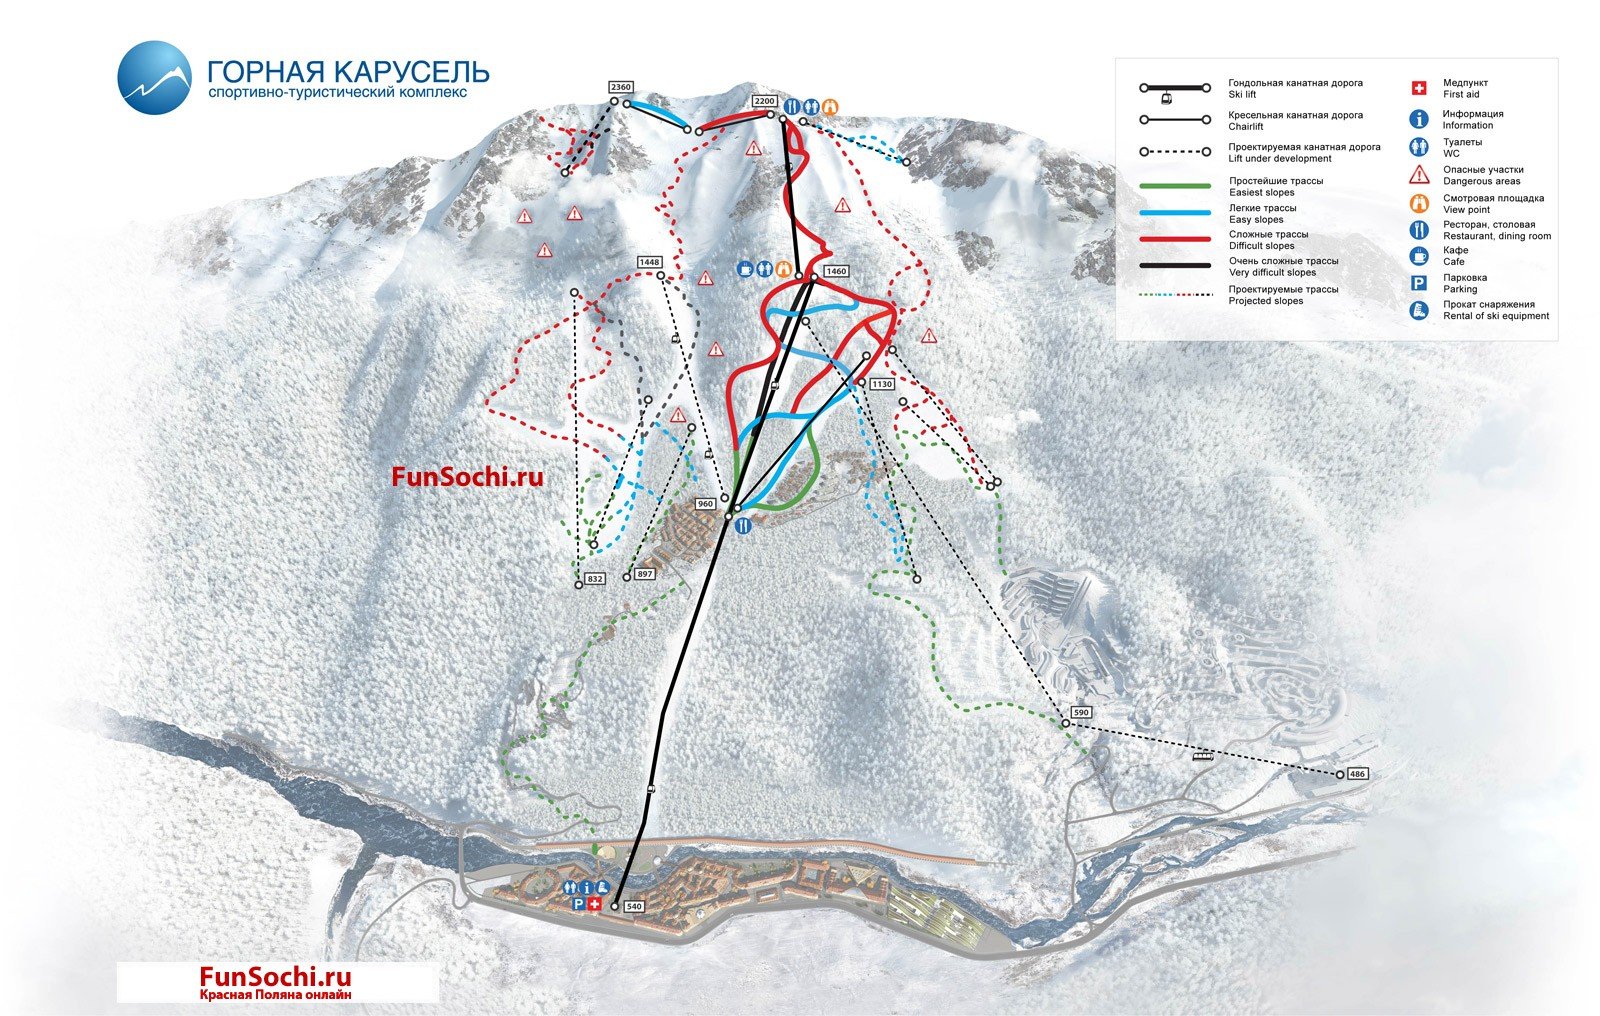 Карта горнолыжного курорта Горная Карусель